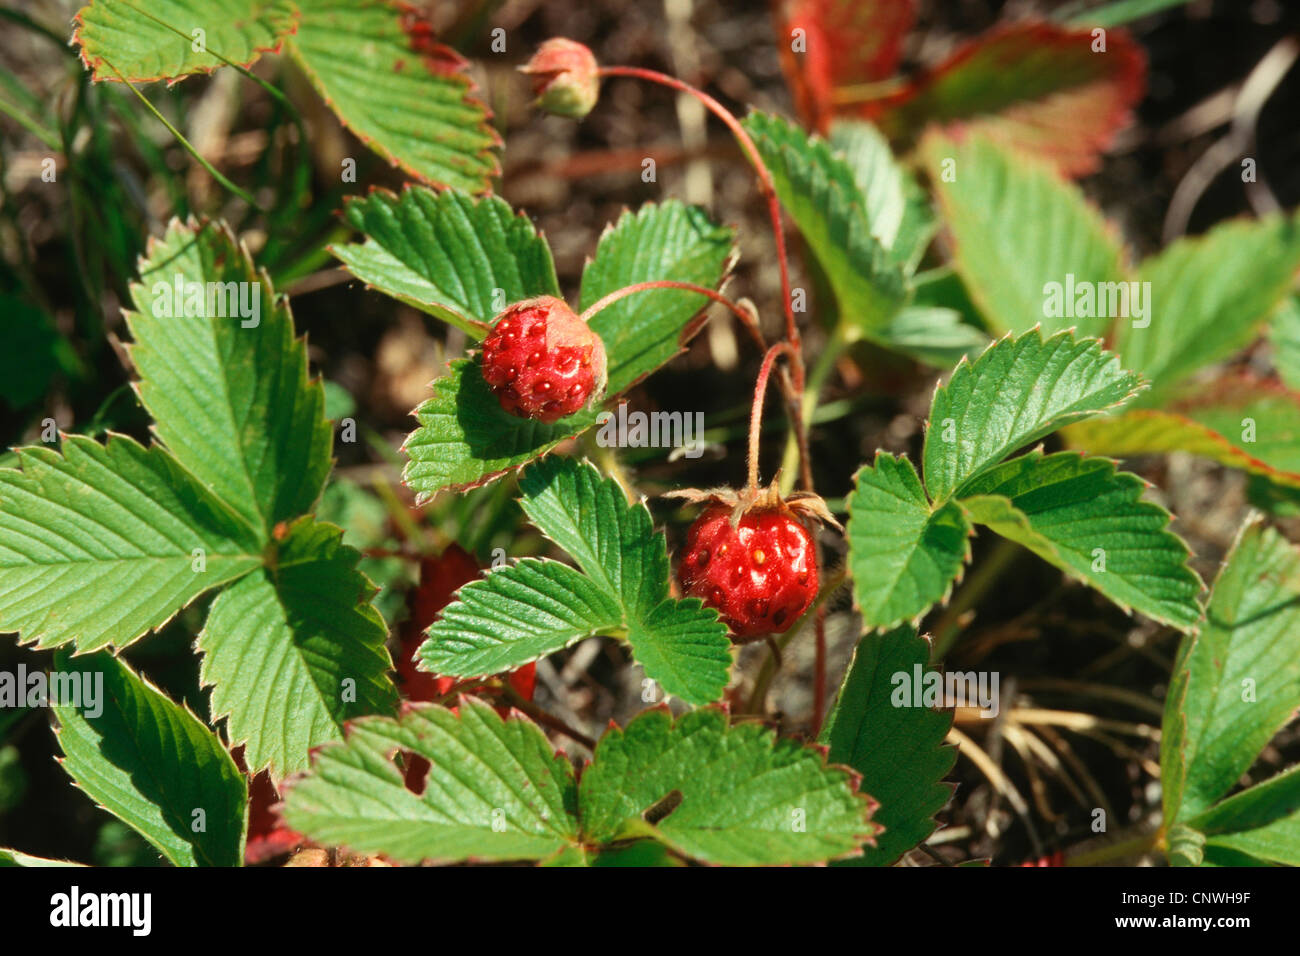 creamy strawberry, wild strawberry (Fragaria viridis), with fruits Stock Photo